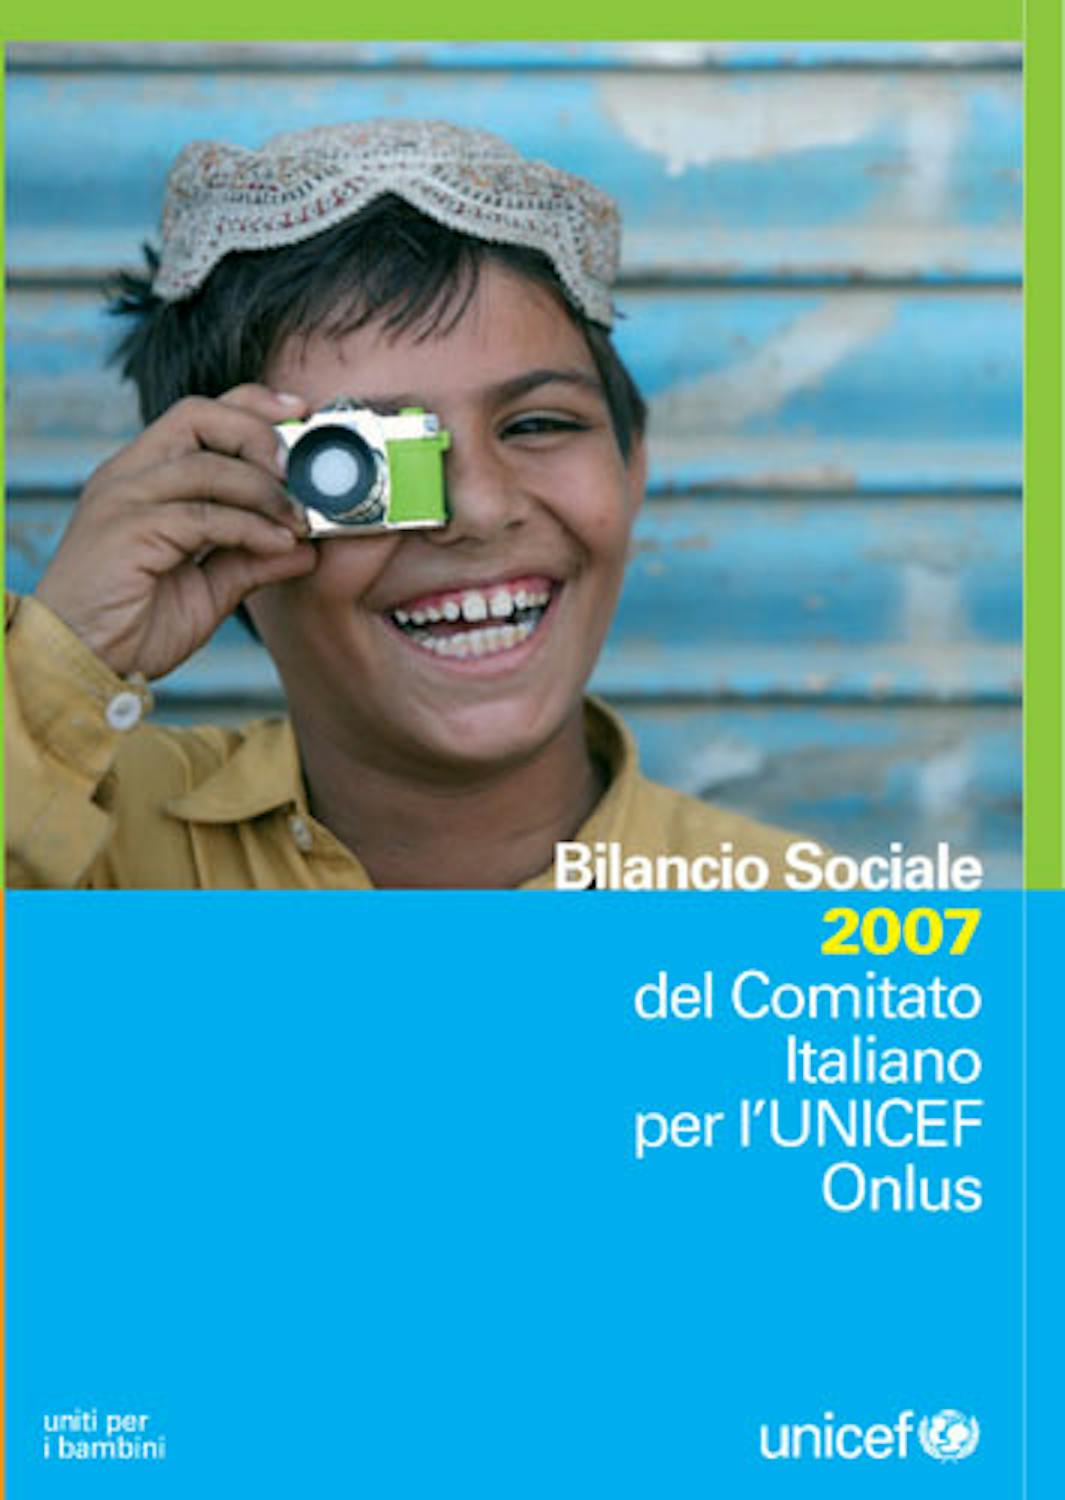 Bilancio sociale 2007 del Comitato Italiano per l'UNICEF